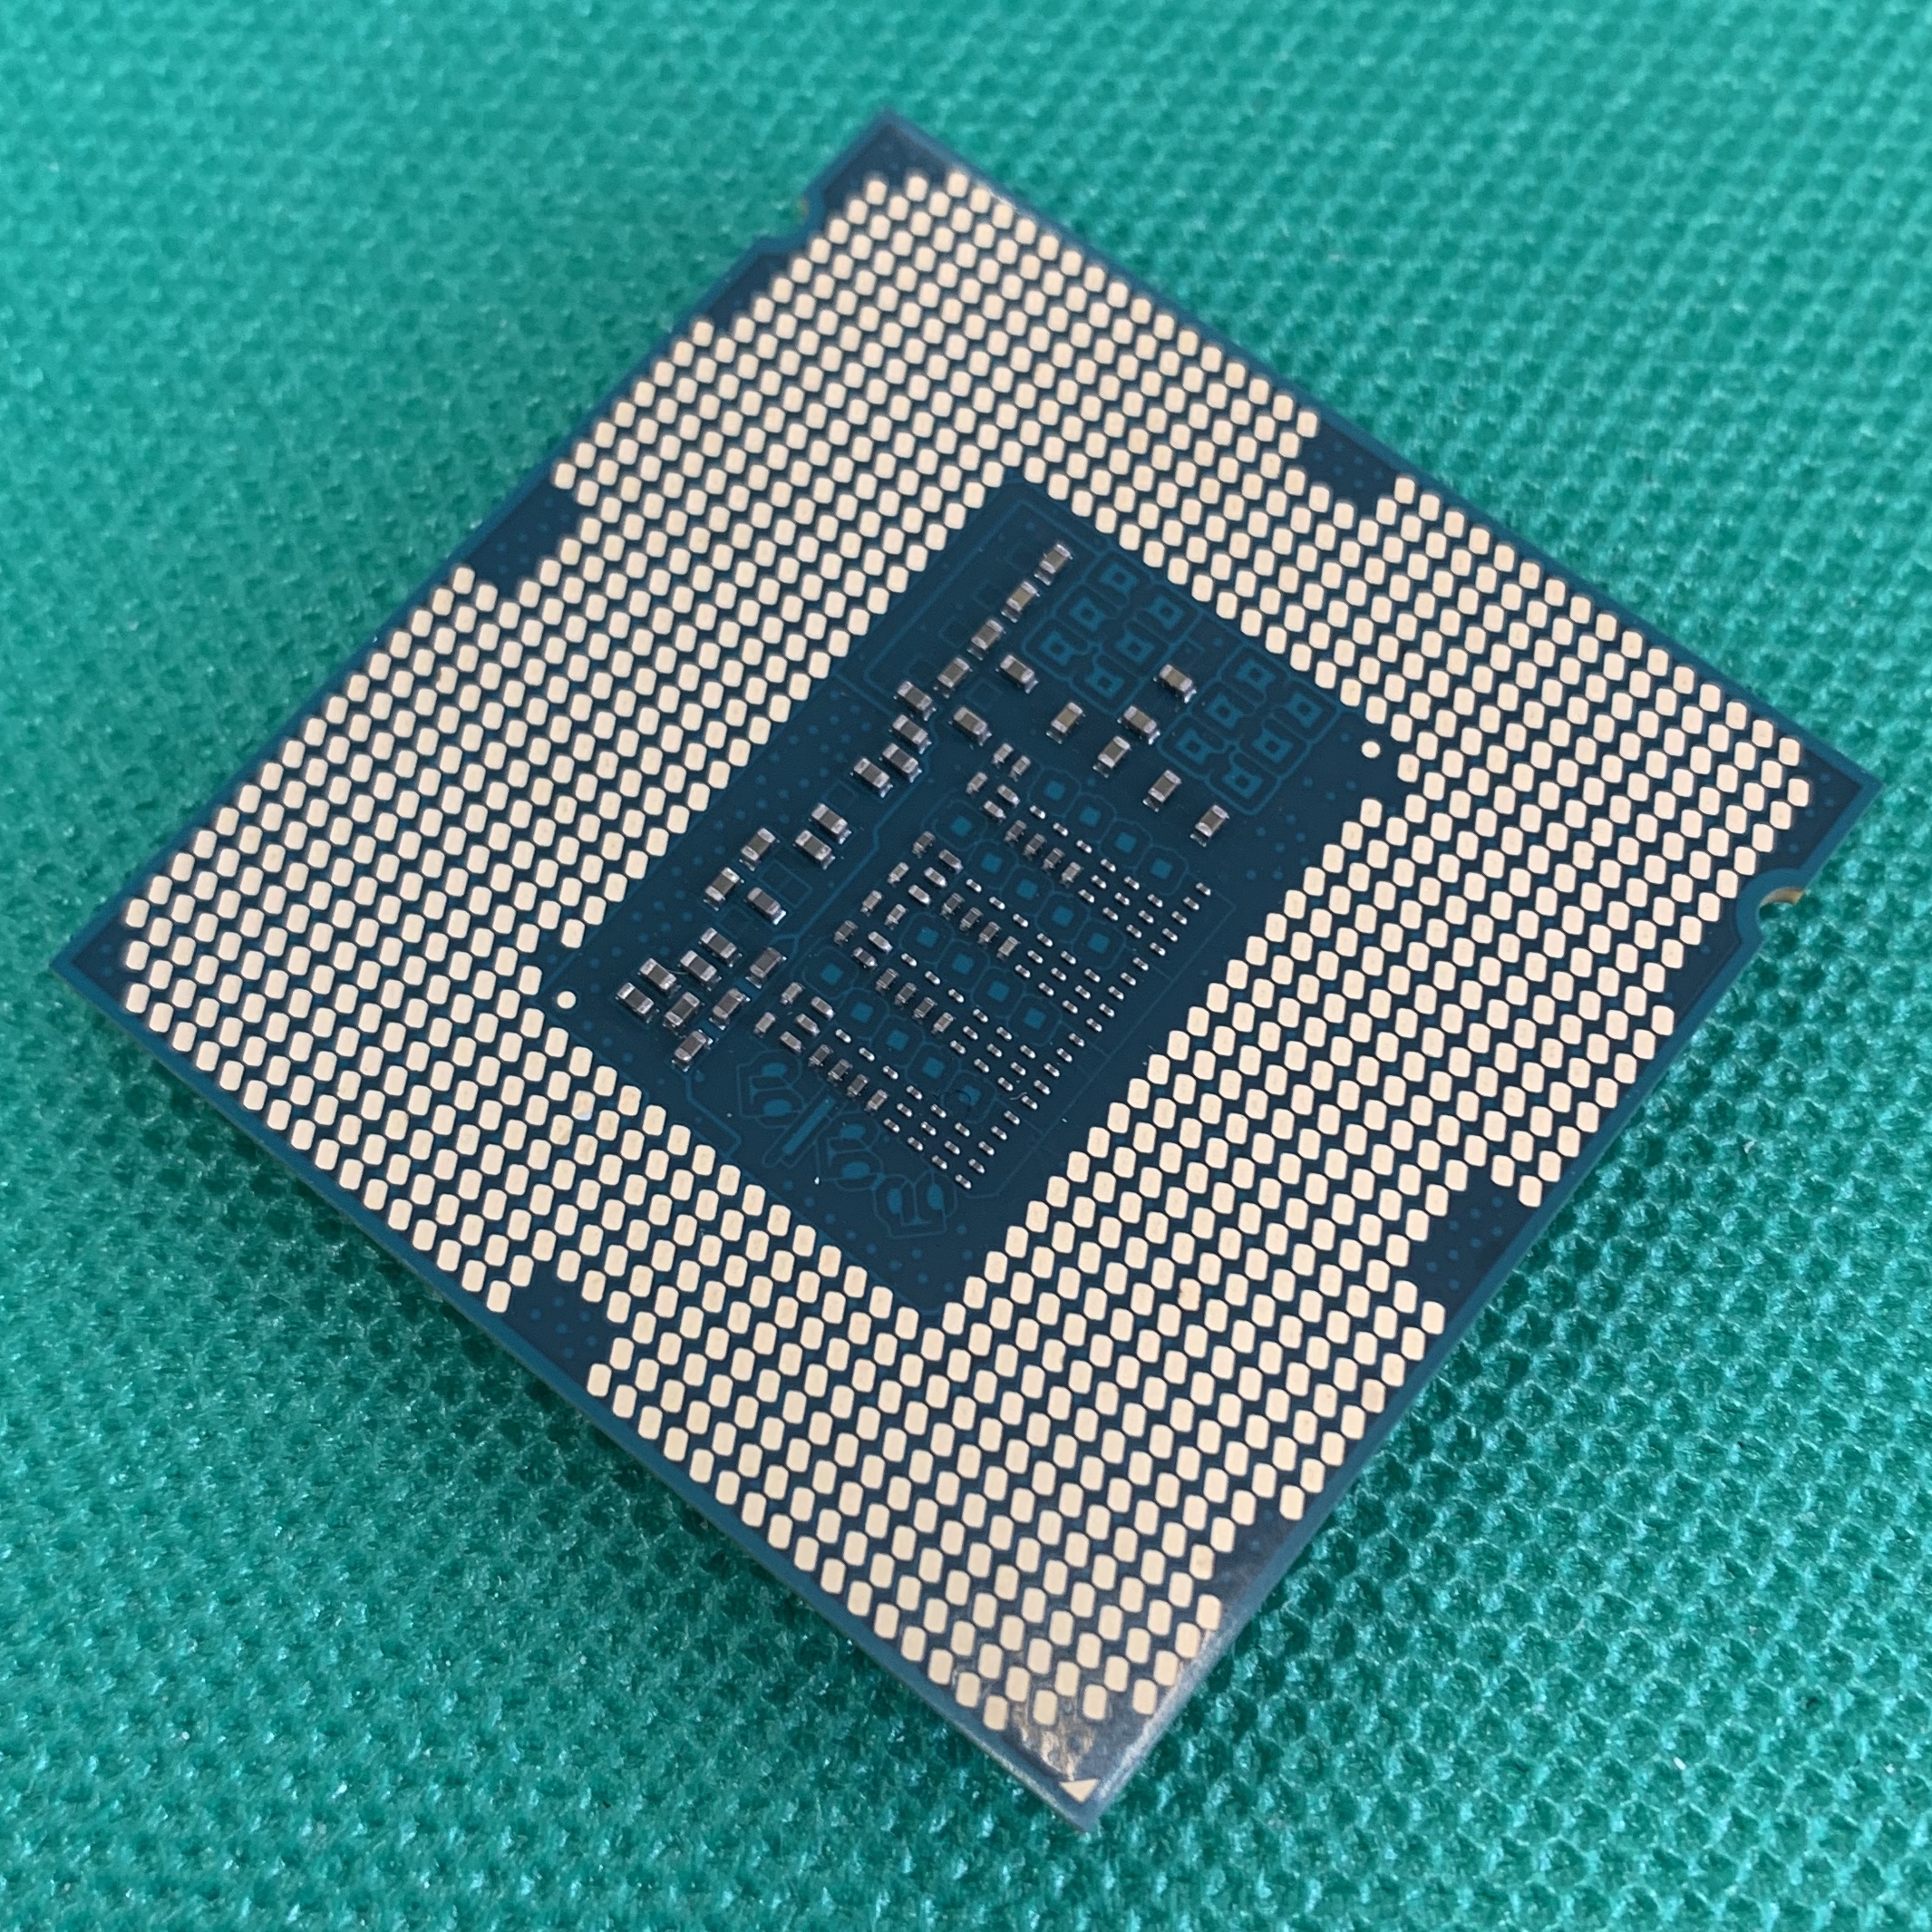 Процессор intel core i3 сокет. Intel Core i5 LGA. Intel Core i5-4590. I5 4460 сокет. Socket 1150 процессоры.